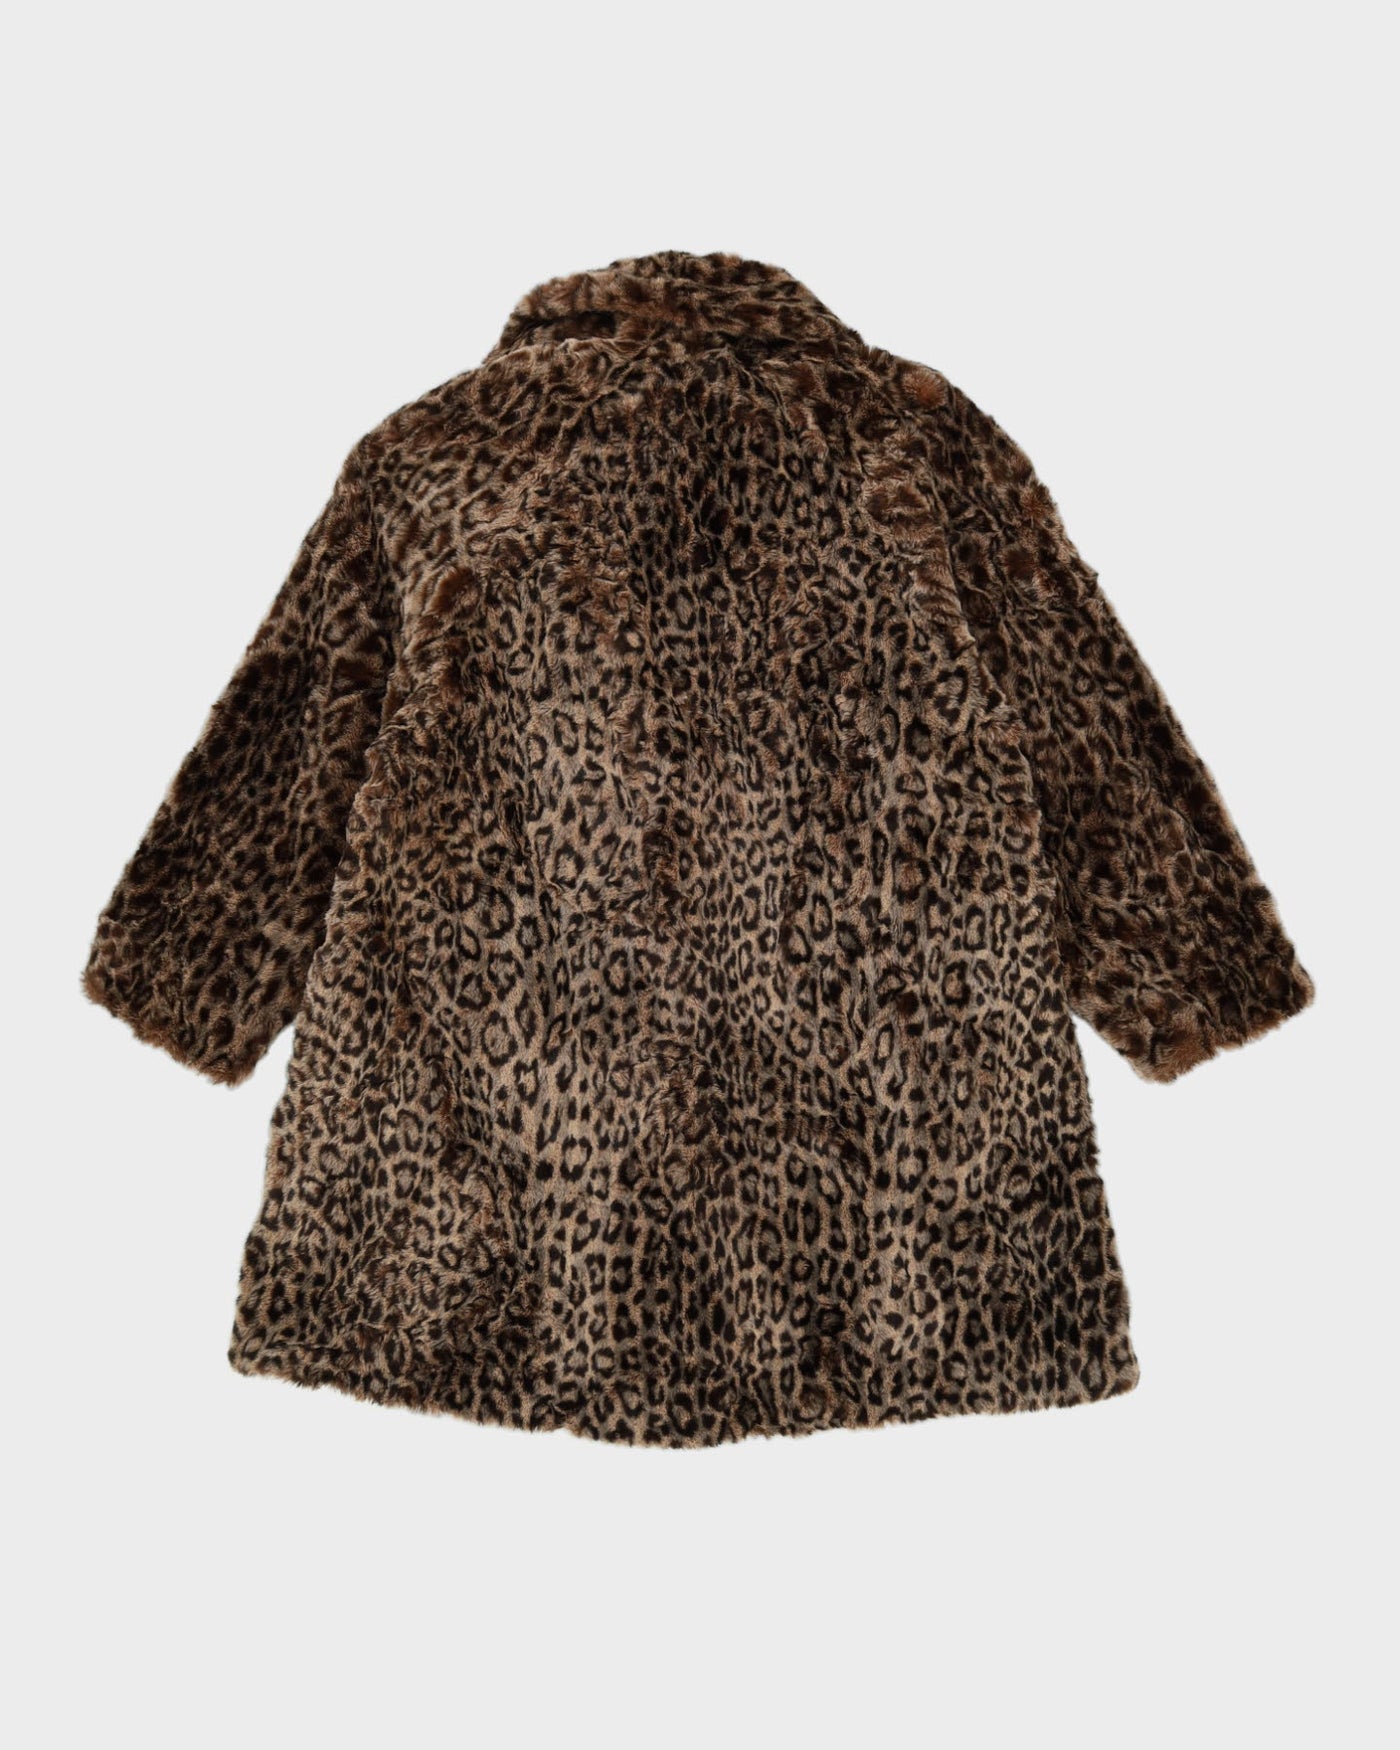 Leopard Print Patterned Faux Fur A-Line Jacket - M